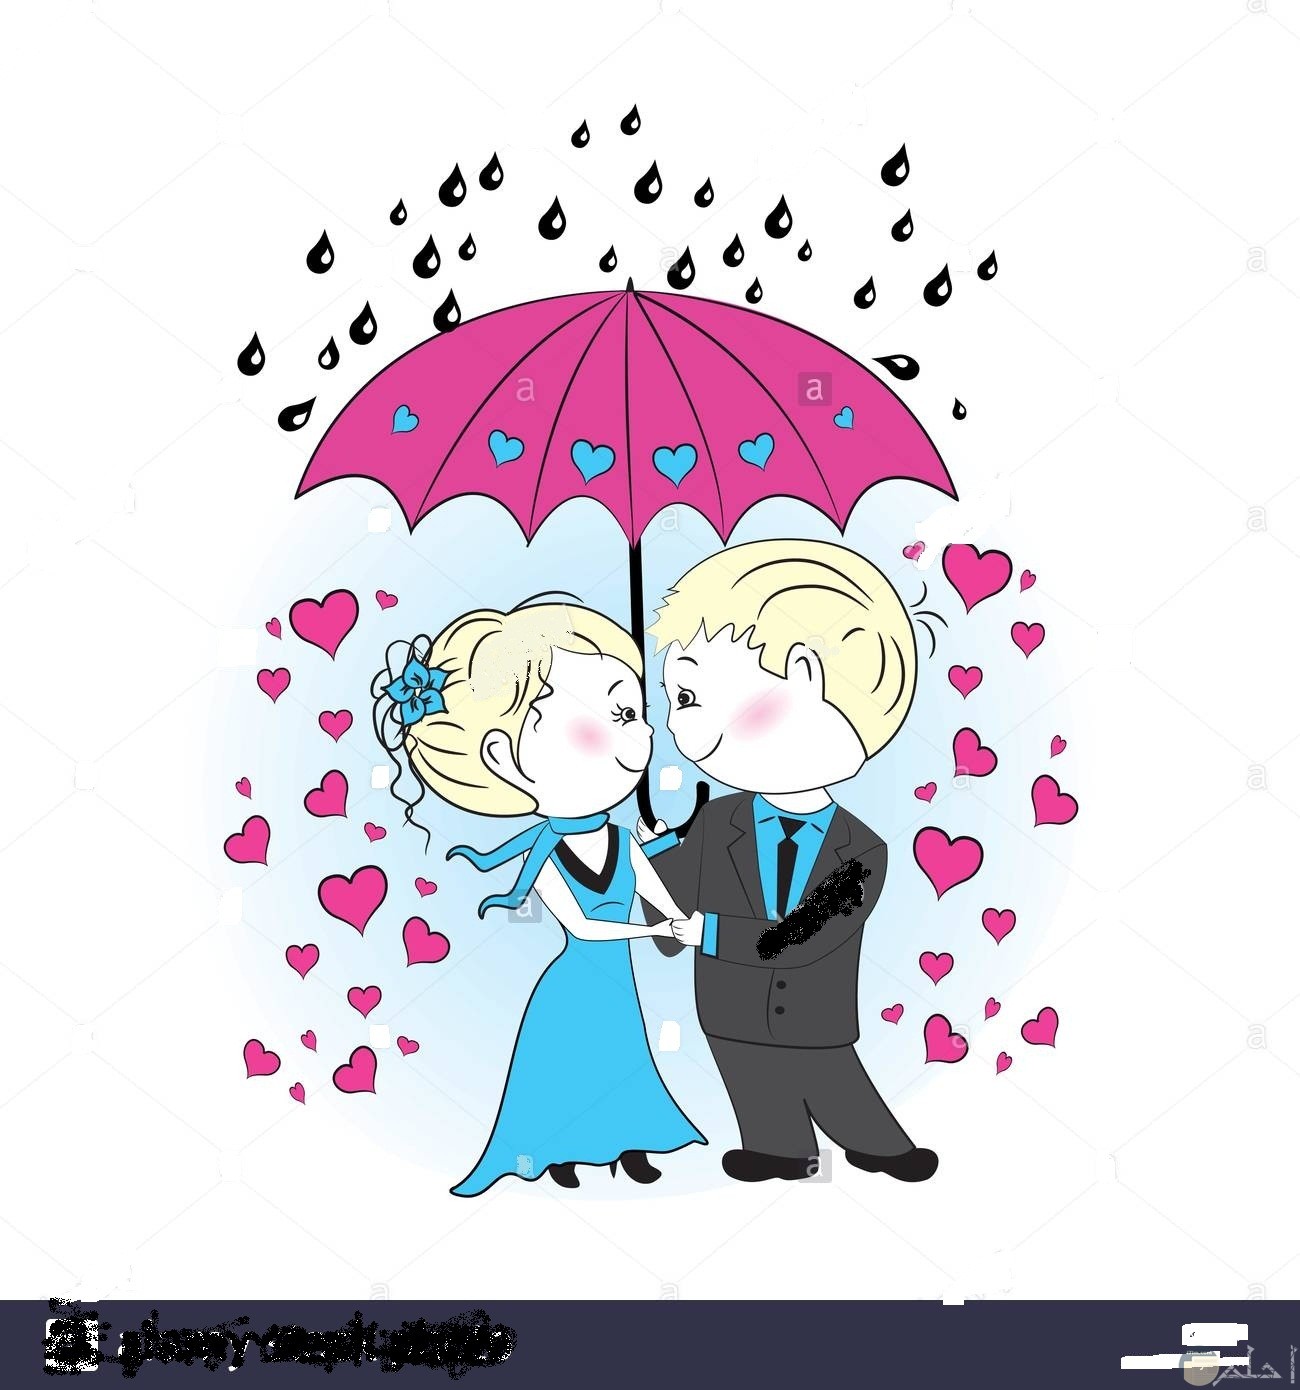 الرومانسية الرائعة تحت المطر.